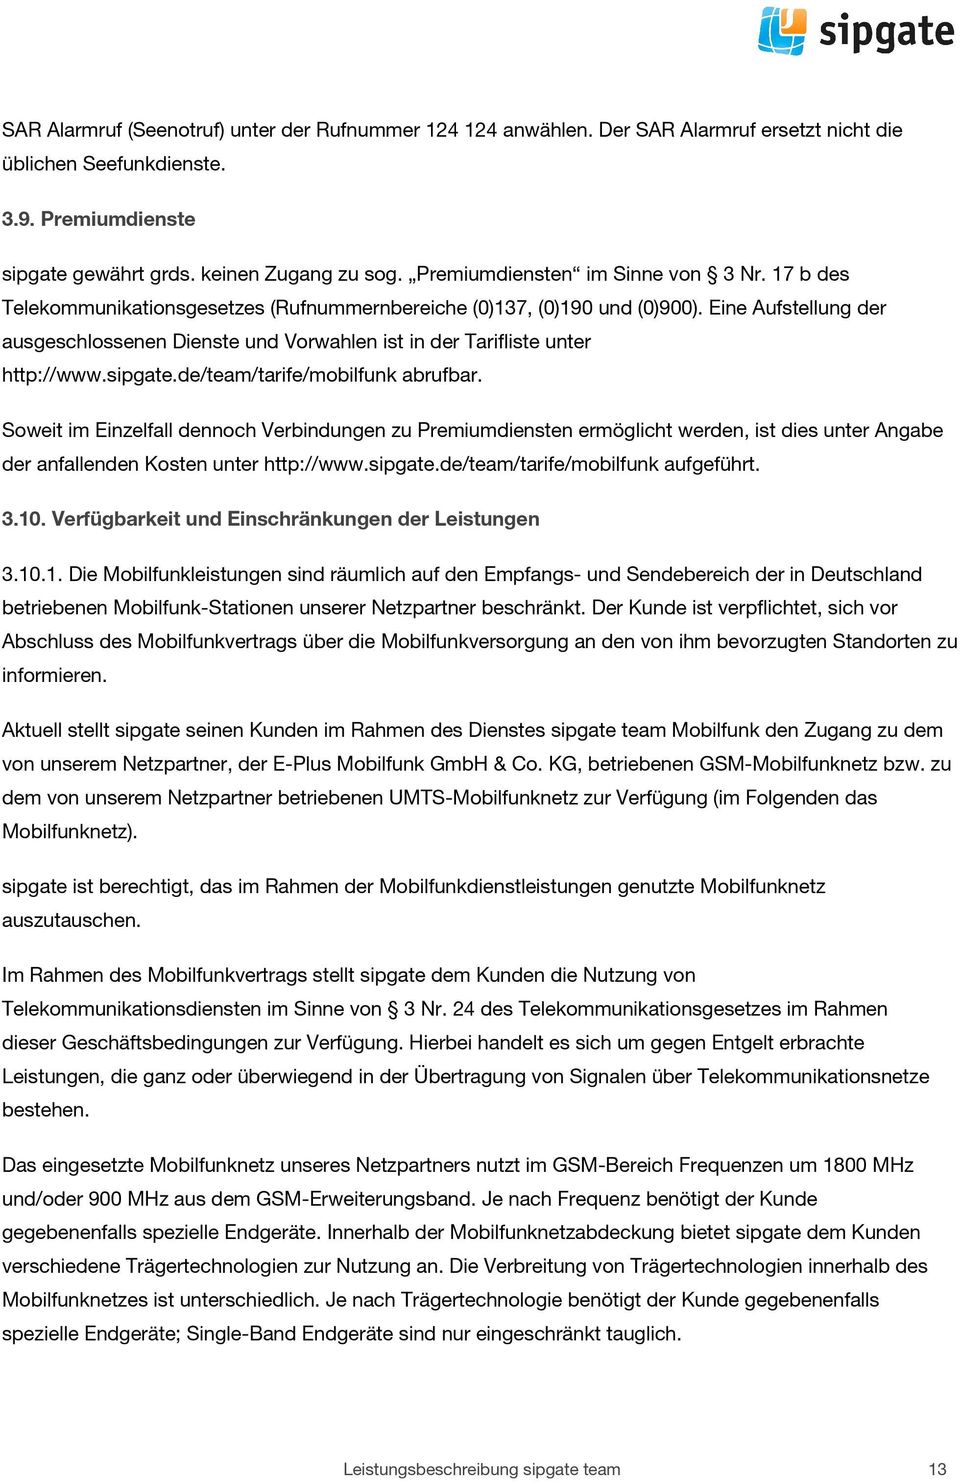 Eine Aufstellung der ausgeschlossenen Dienste und Vorwahlen ist in der Tarifliste unter http://www.sipgate.de/team/tarife/mobilfunk abrufbar.